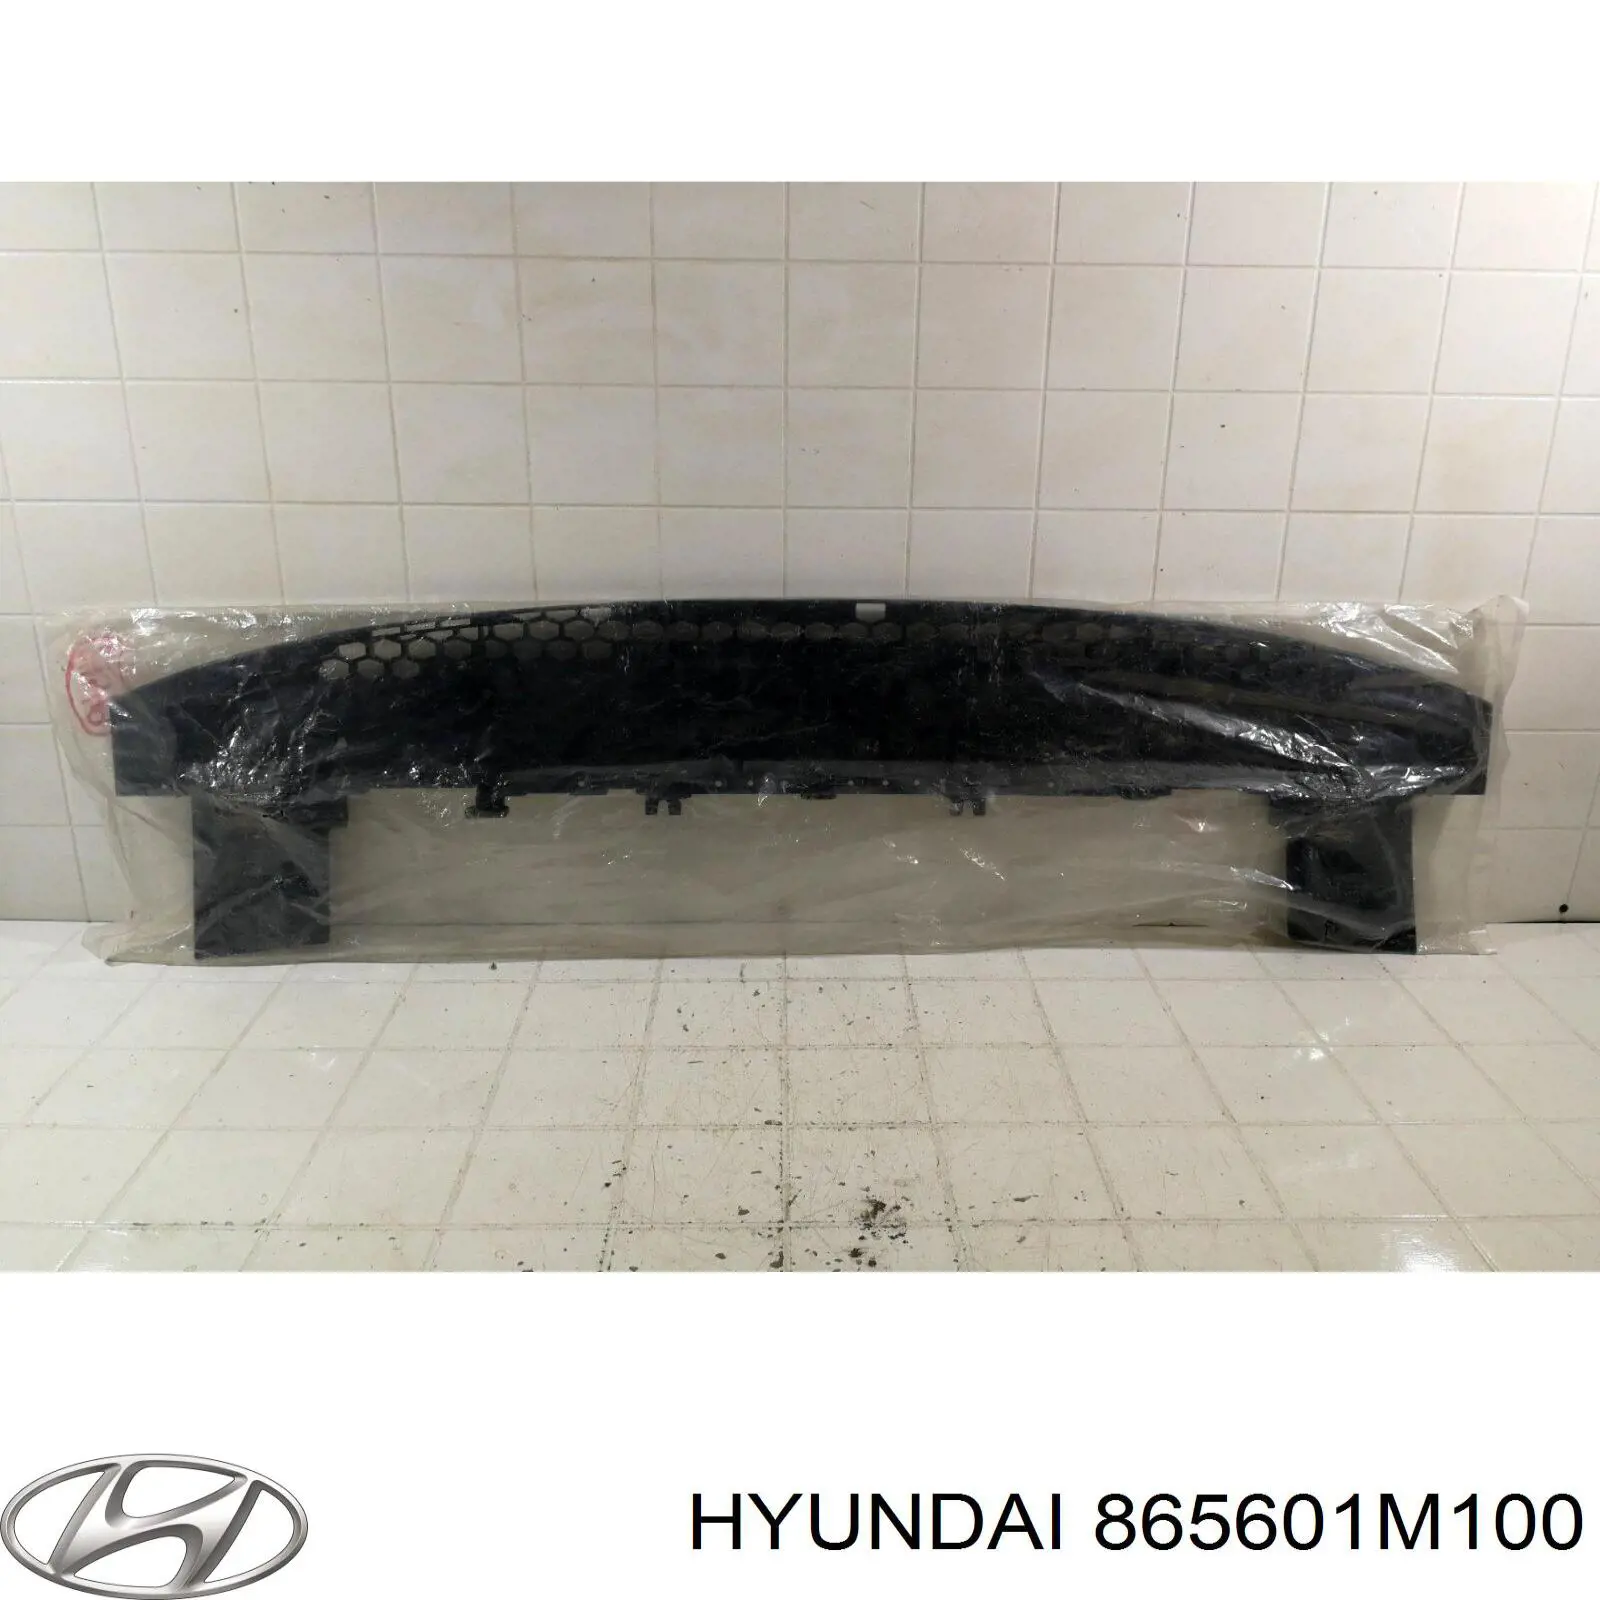 865601M100 Hyundai/Kia protector para parachoques